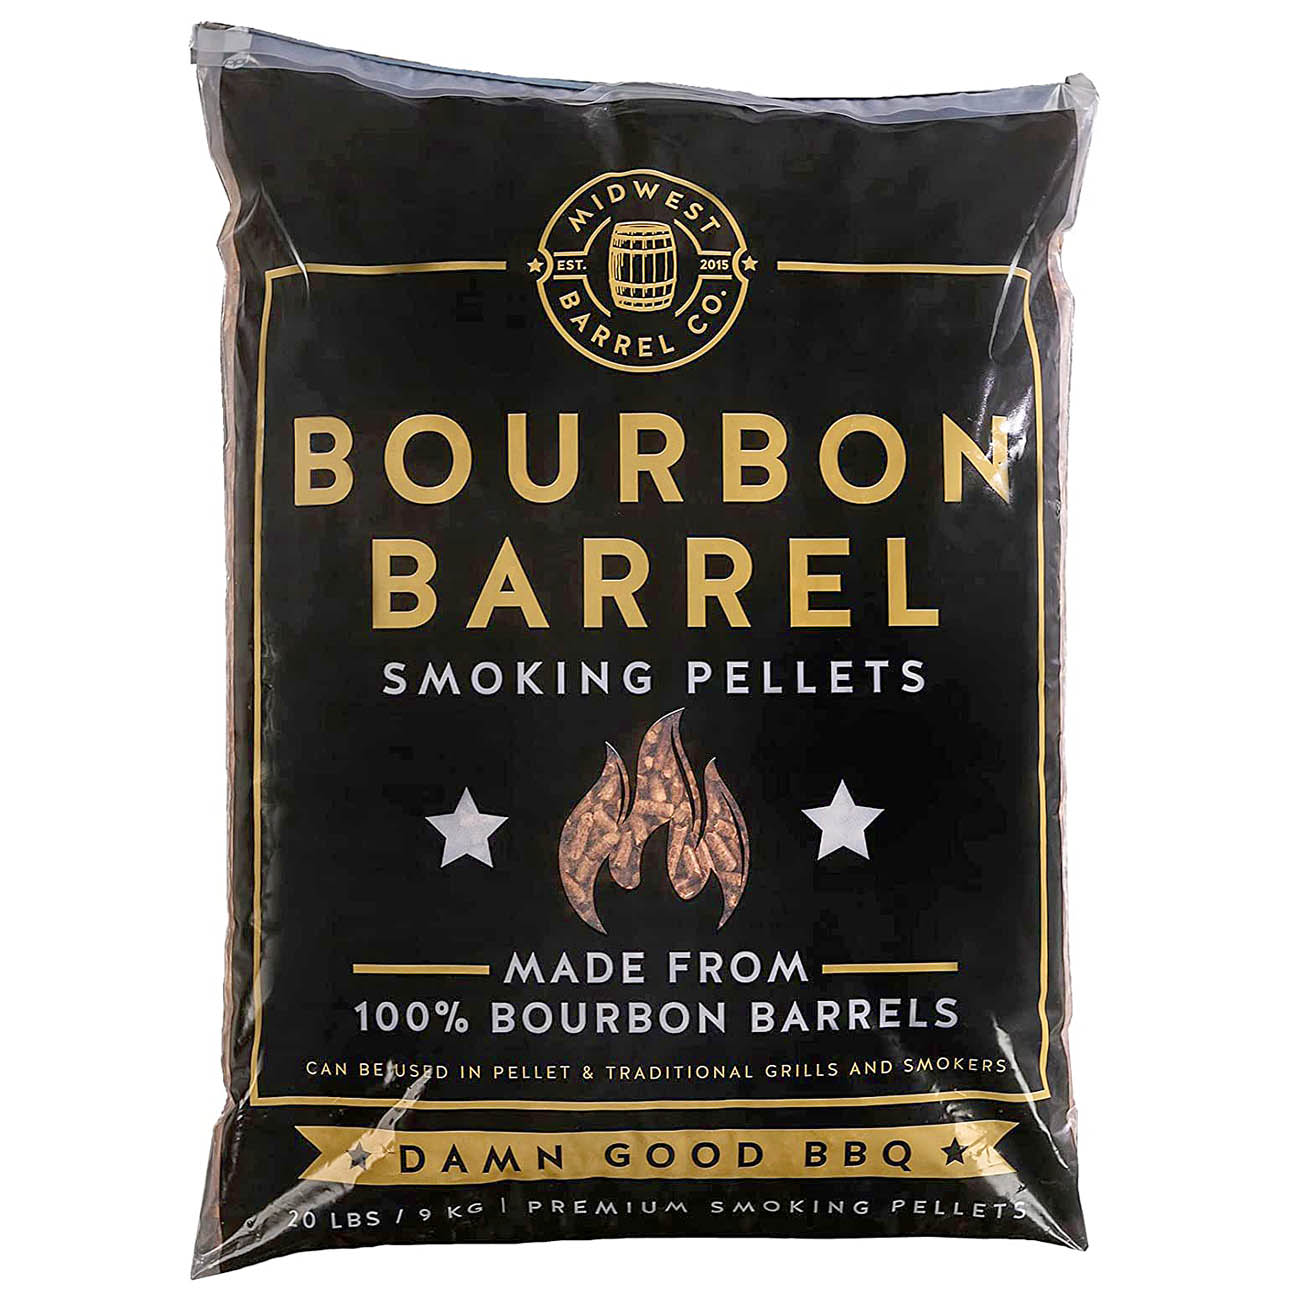 Midwest Barrel Company Bourbon Barrel BBQ Smoking Wood Pellets 20 LB/9 KG Bag